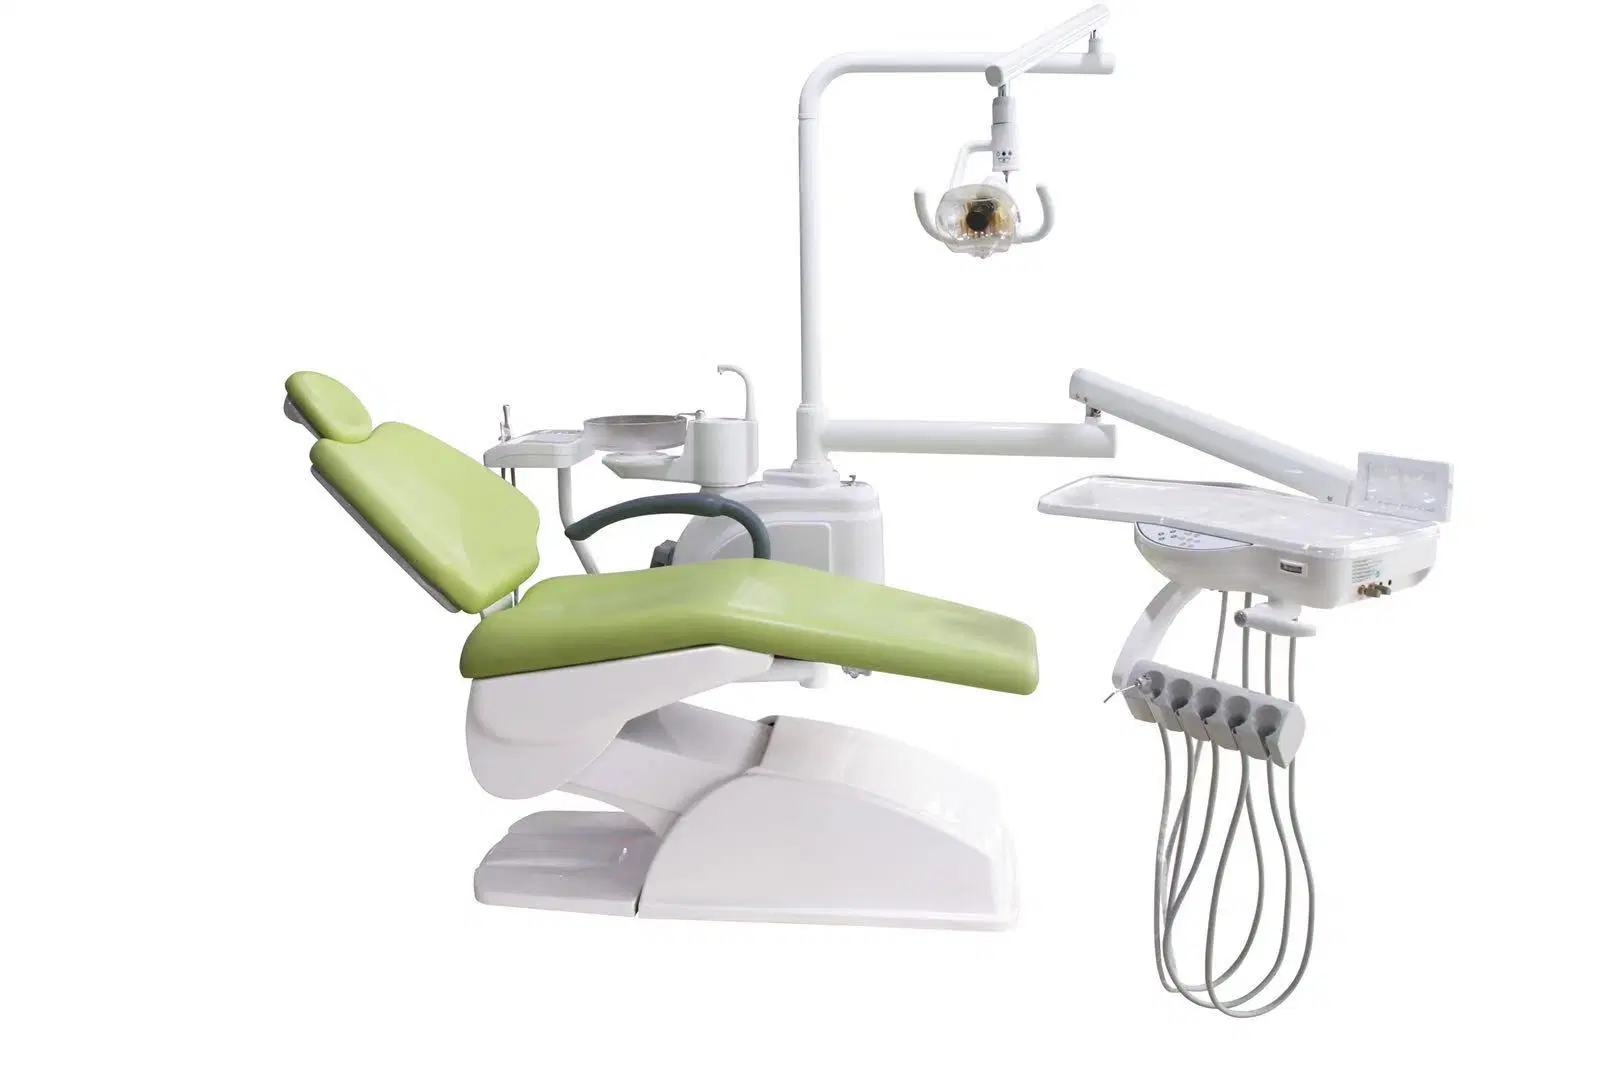 China Fábrica Foshan Preço mais barato Basic equipamentos dentários cadeira odontológica